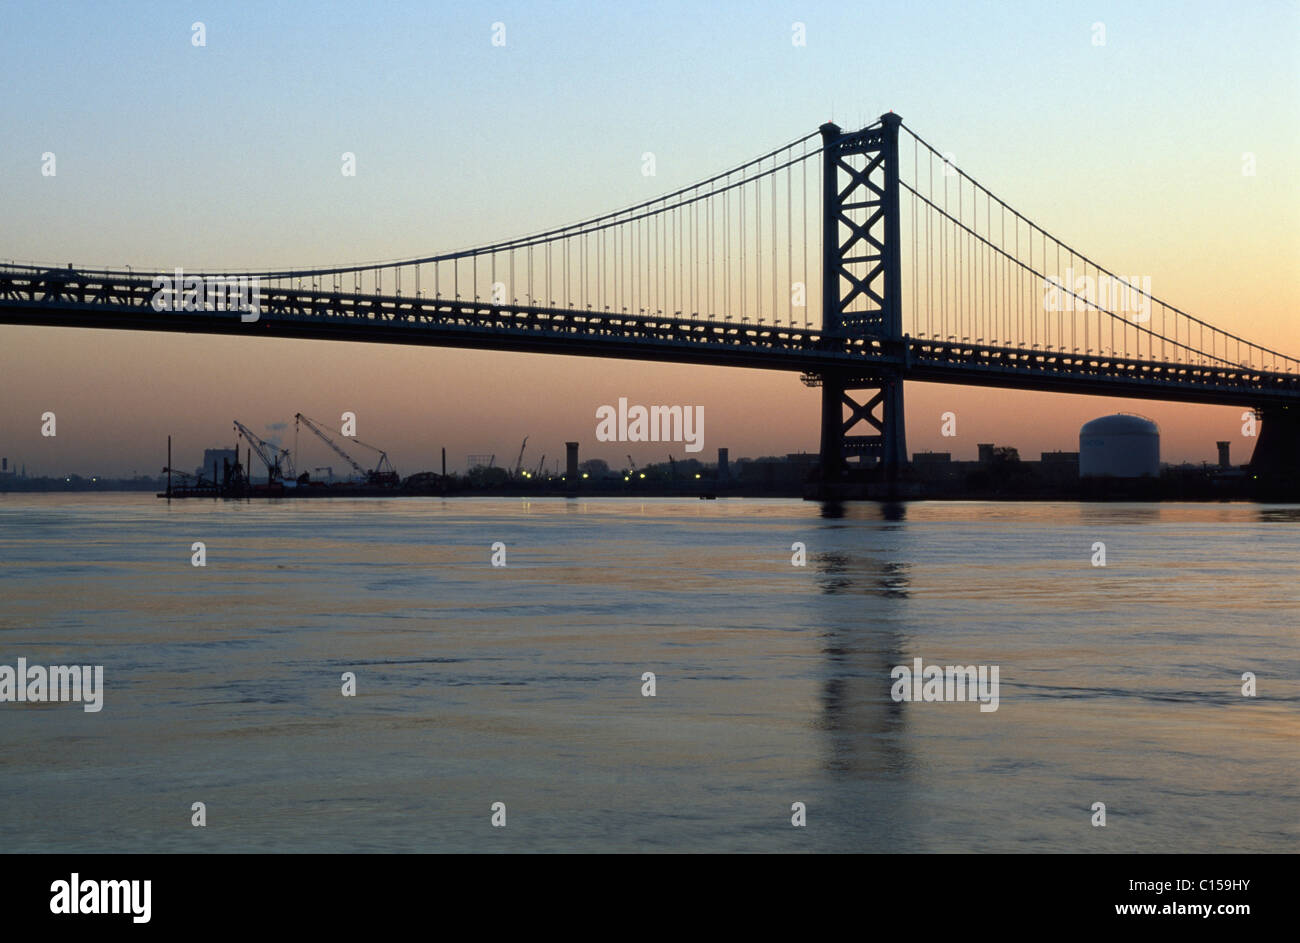 Benjamin Franklin Bridge at dusk Stock Photo